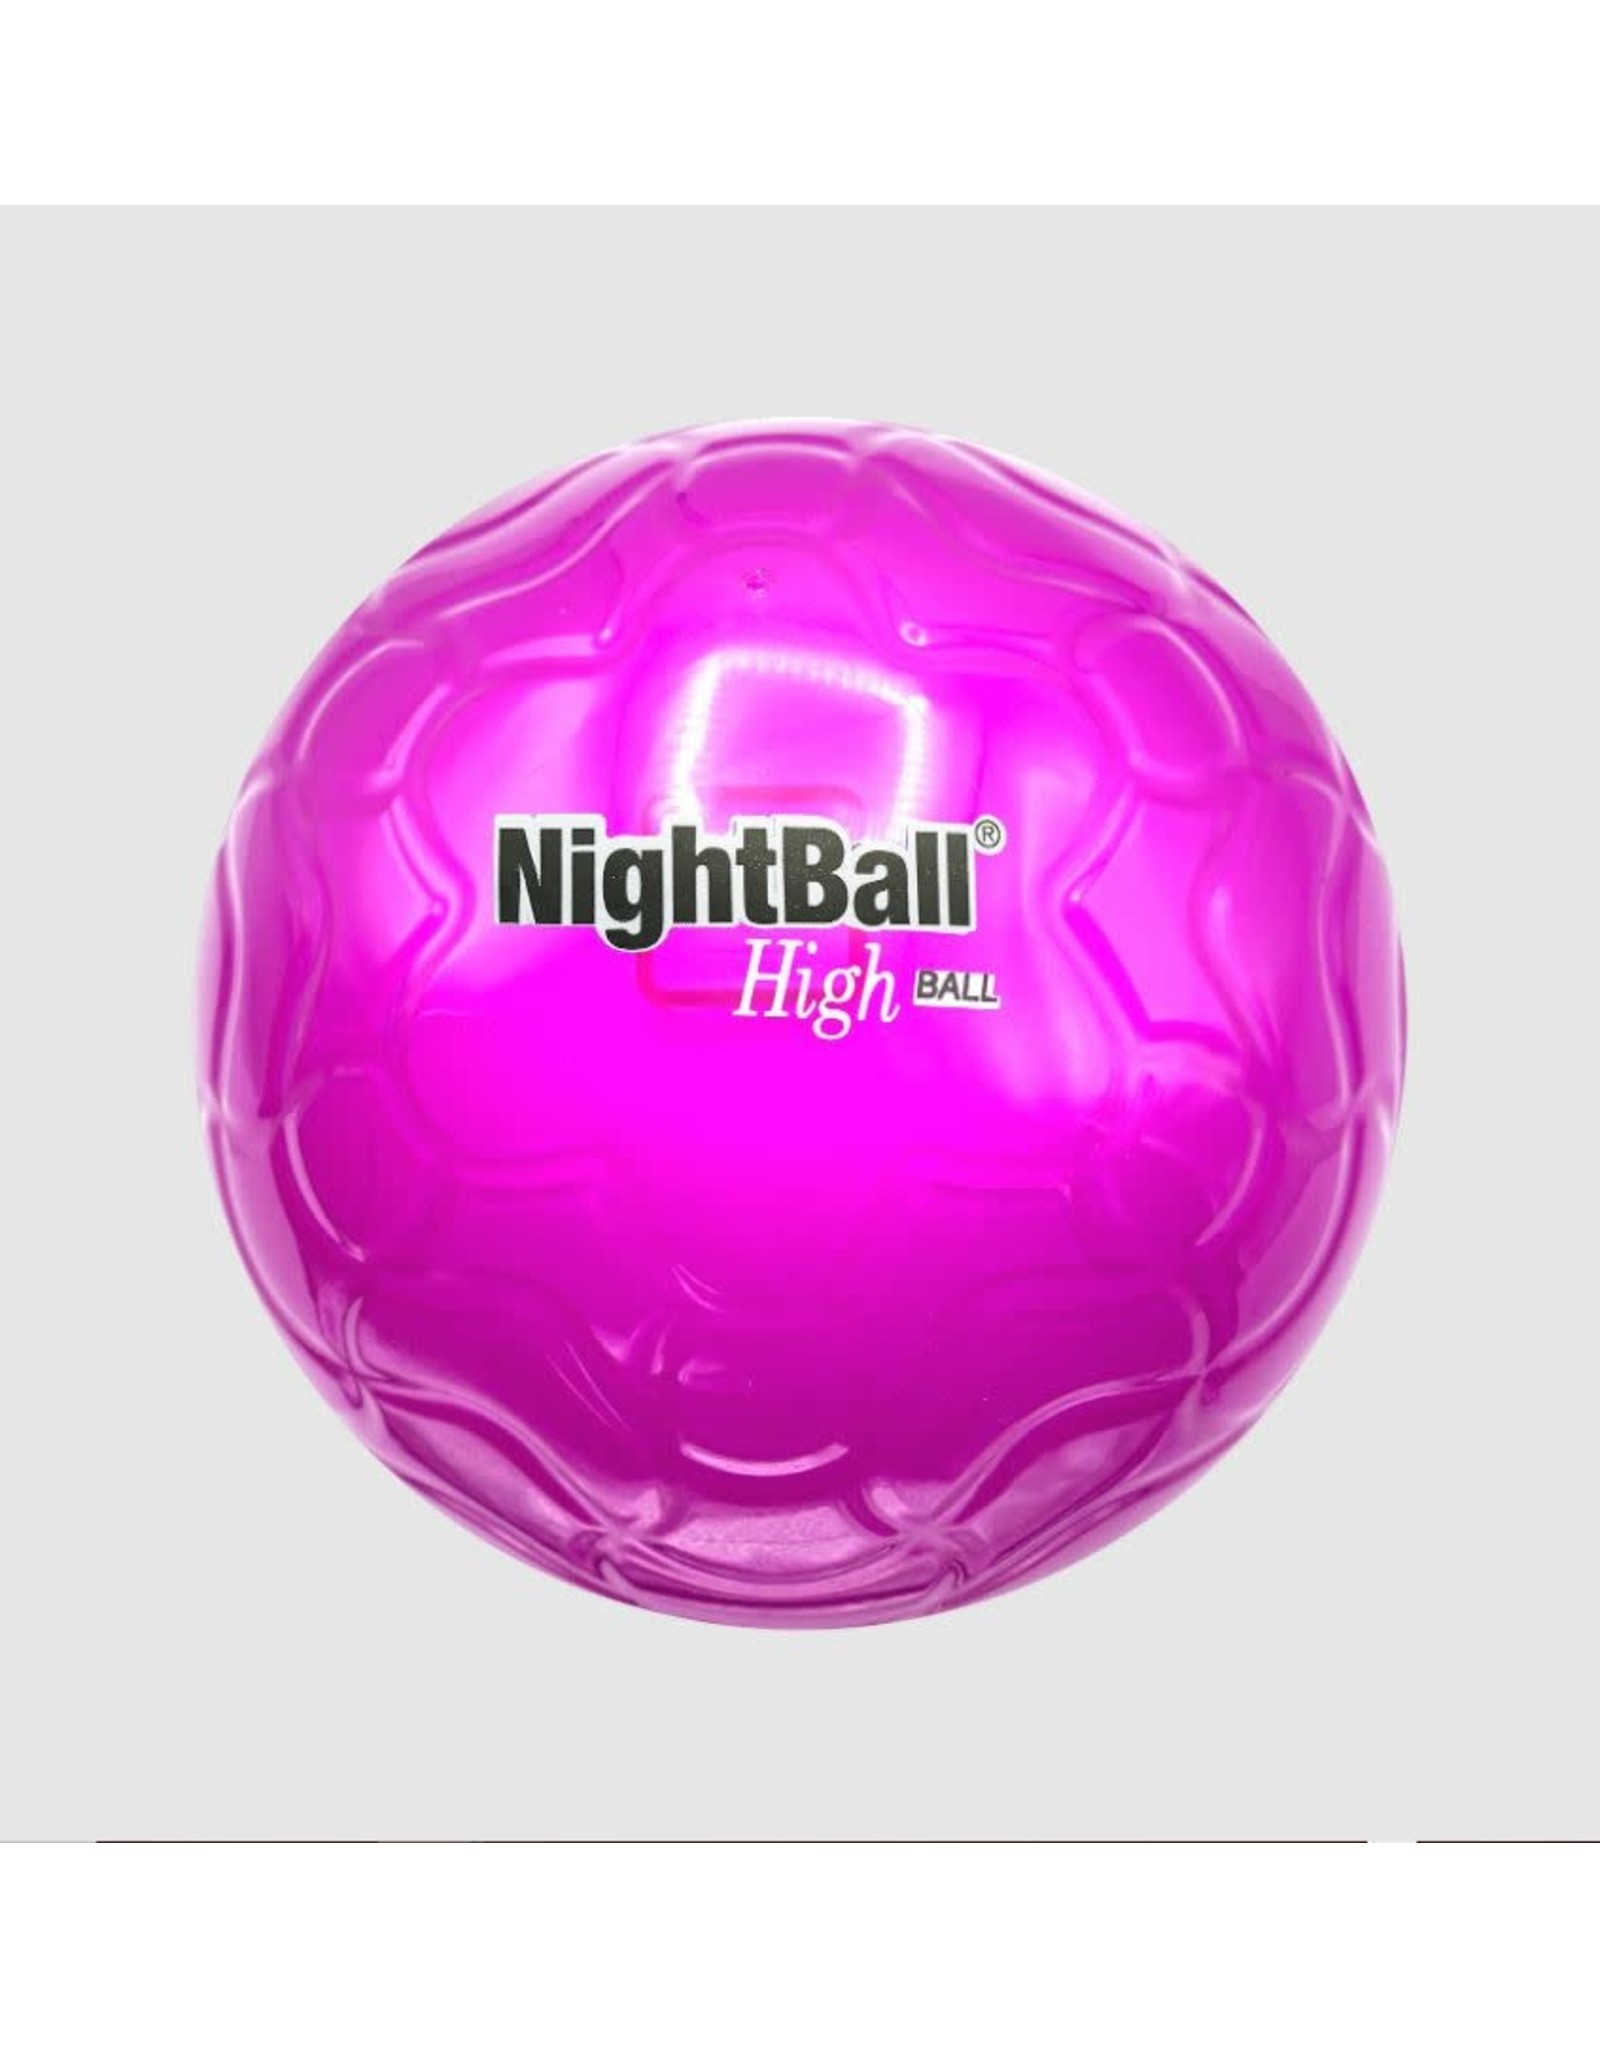 NightBall HighBall